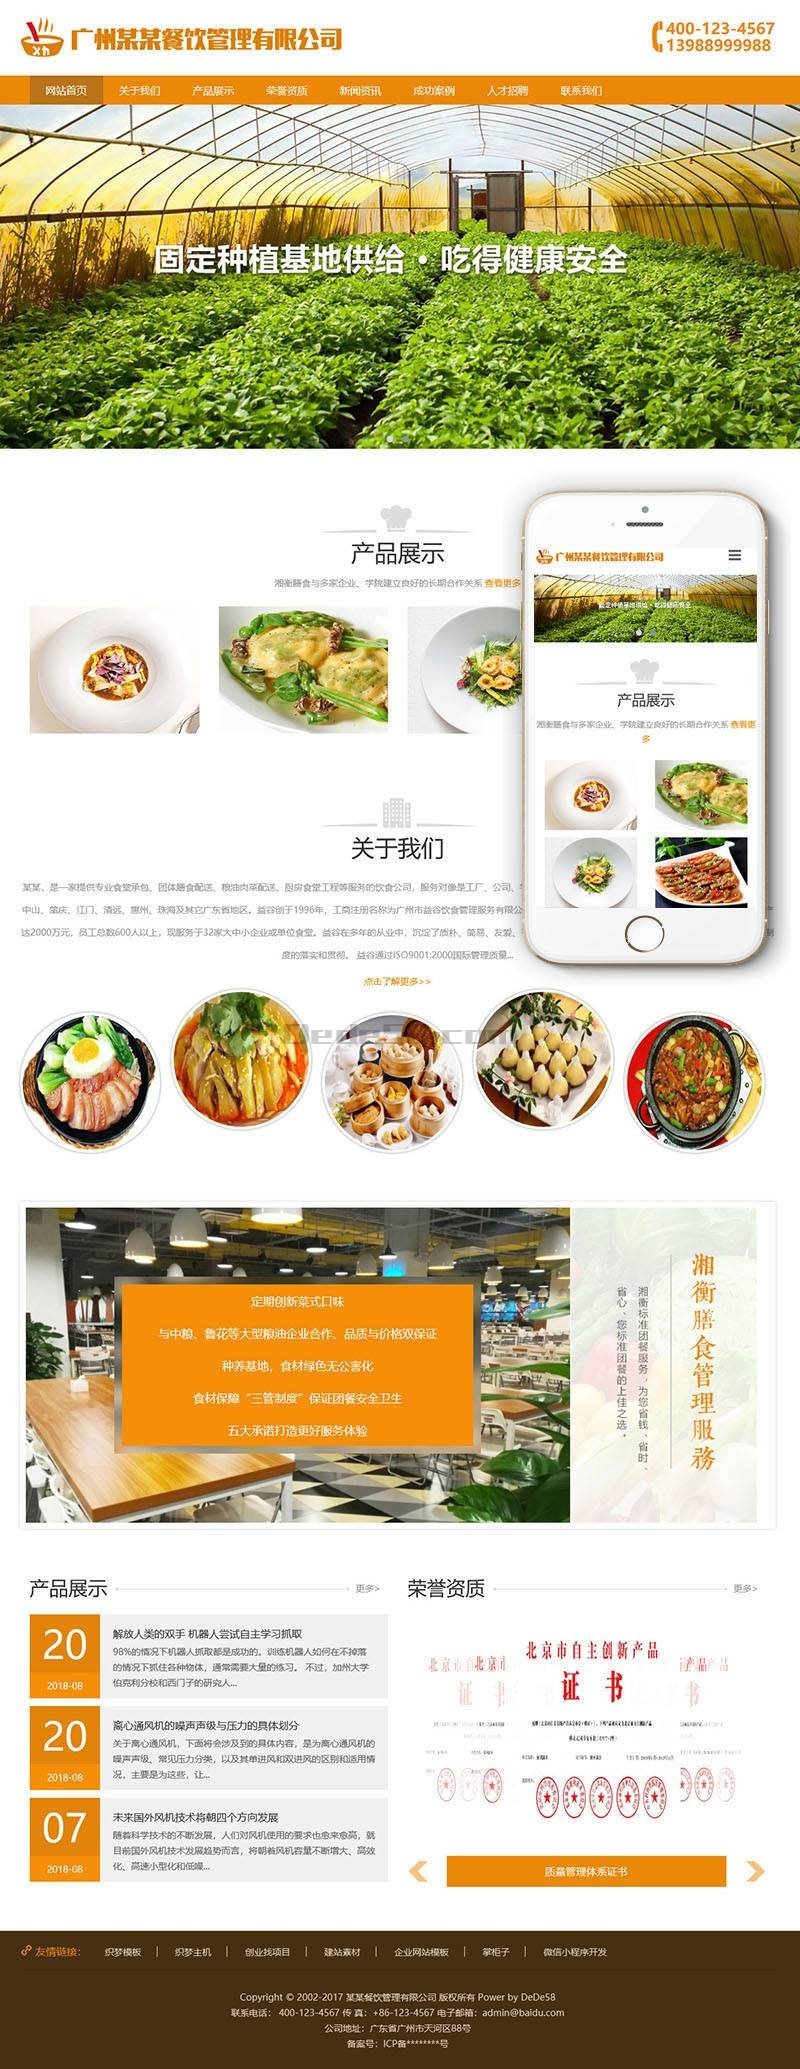 响应式膳食餐饮管理公司类织梦模板(自适应手机端)-学习笔记-橙子系统站